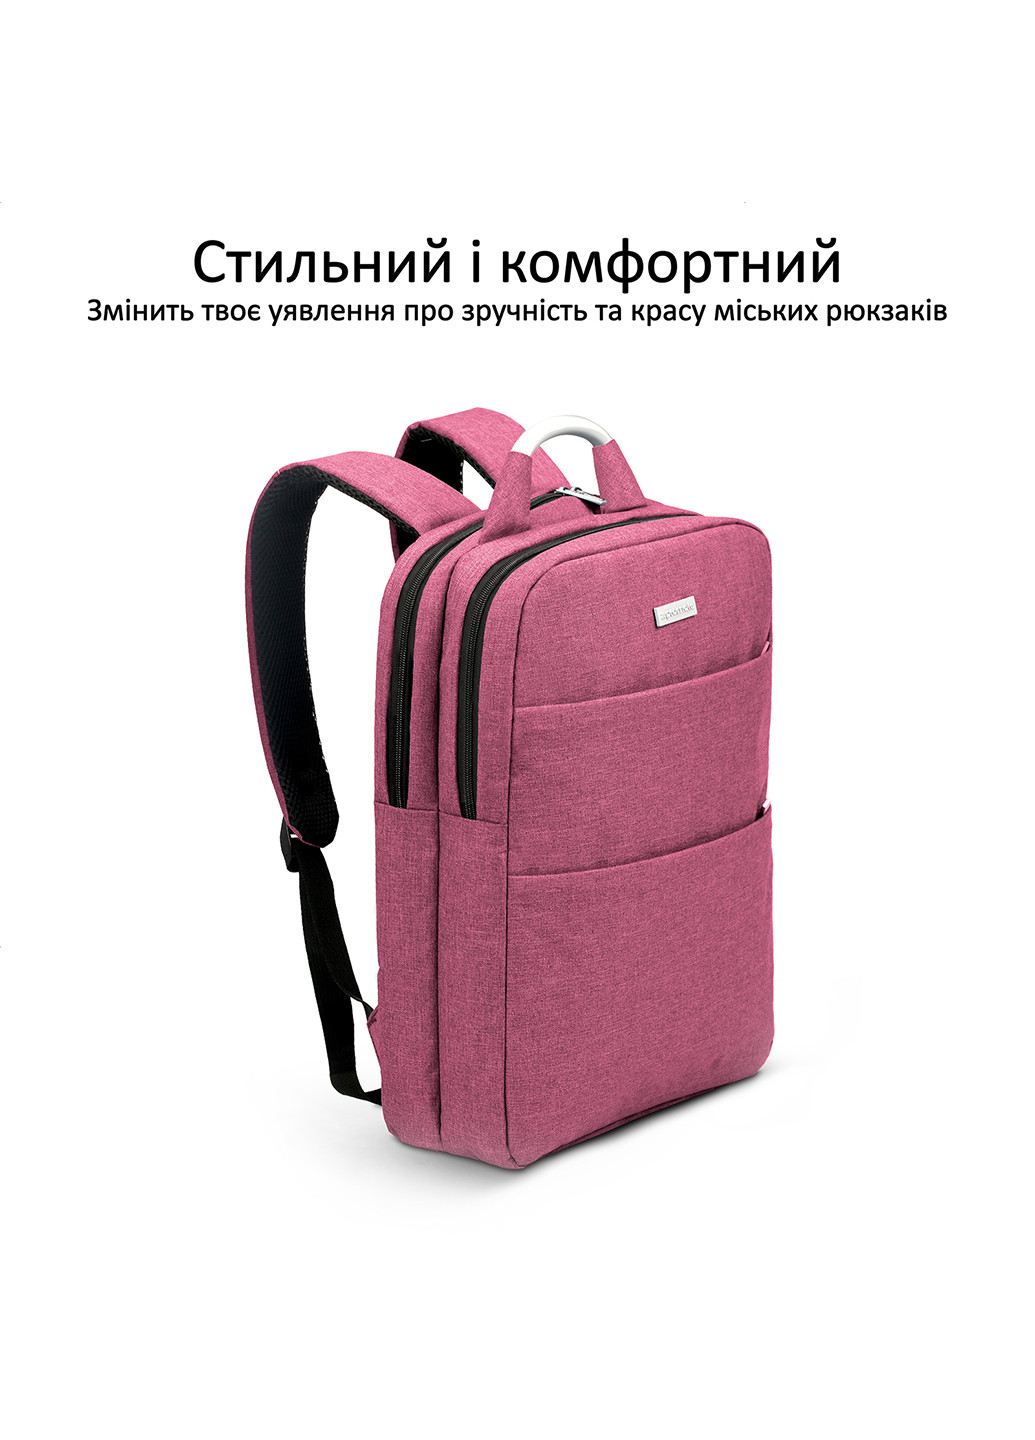 Рюкзак для ноутбука Nova-BP 15.6" Promate nova-bp.red (202118085)